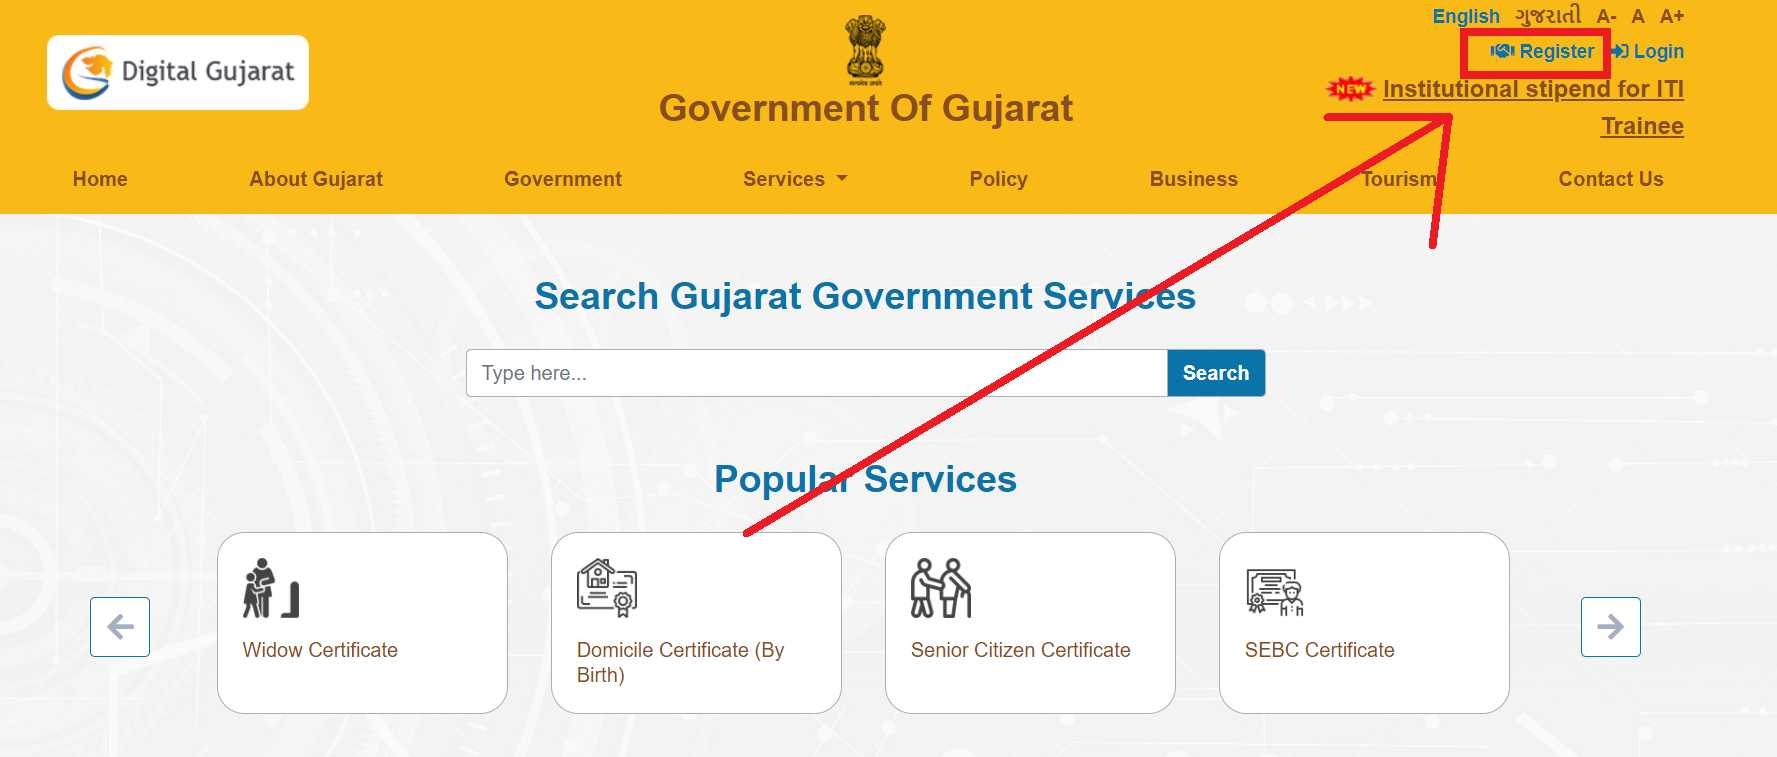 Digital Gujarat Online Registration